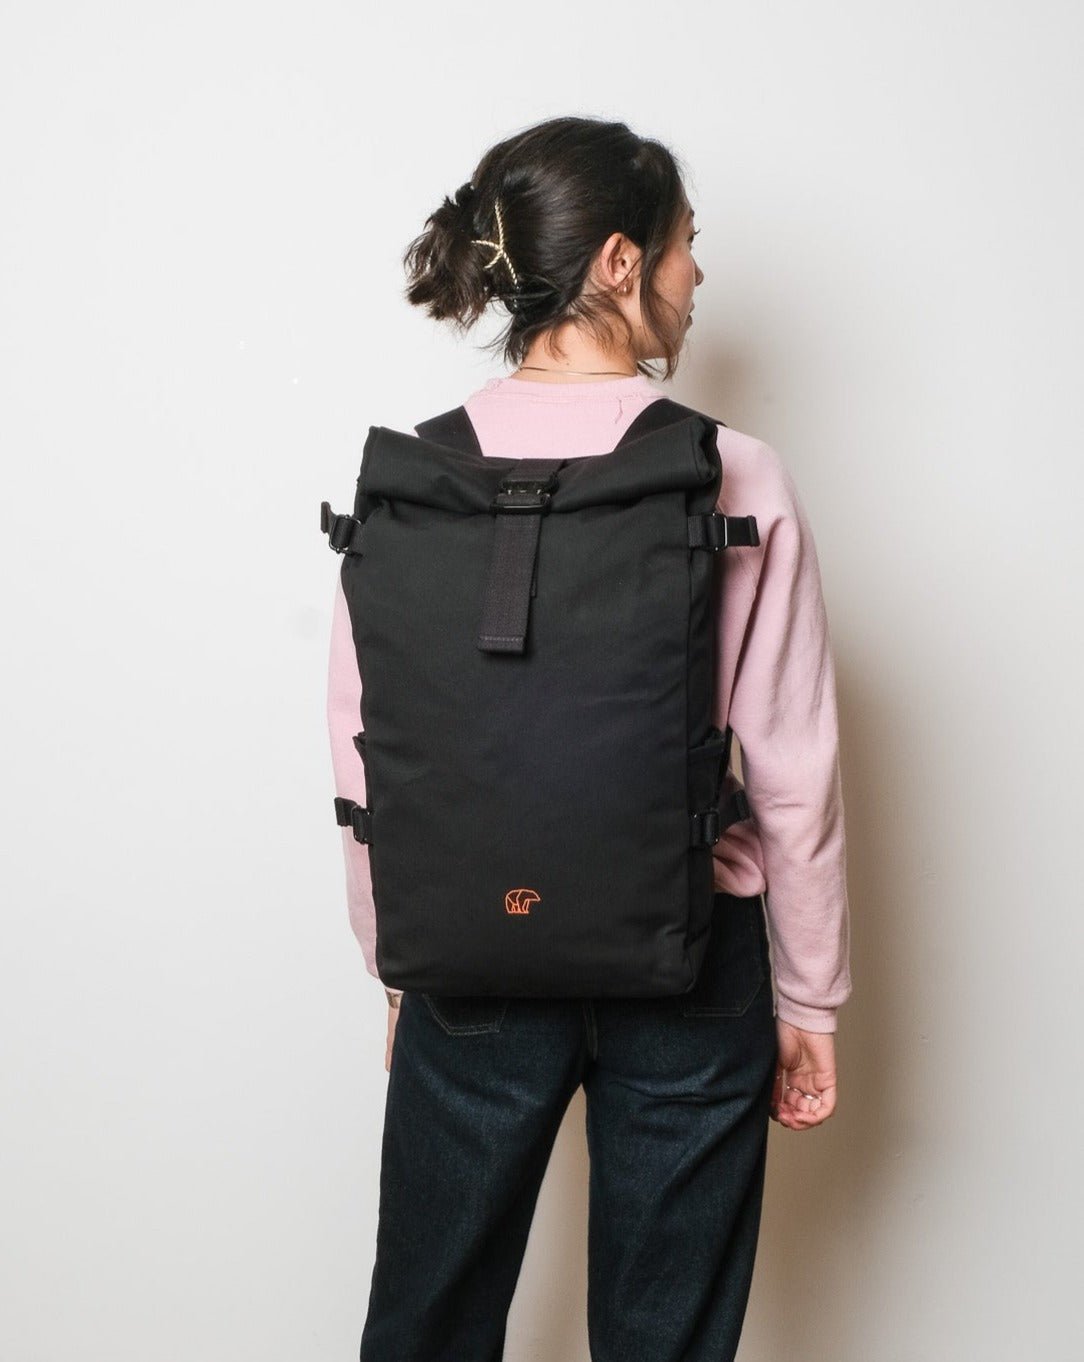 https://bearmade.co.uk/cdn/shop/products/gouthwaite-backpack-18-23l-blackbackpackbearmade-237942.jpg?v=1679337602&width=1445